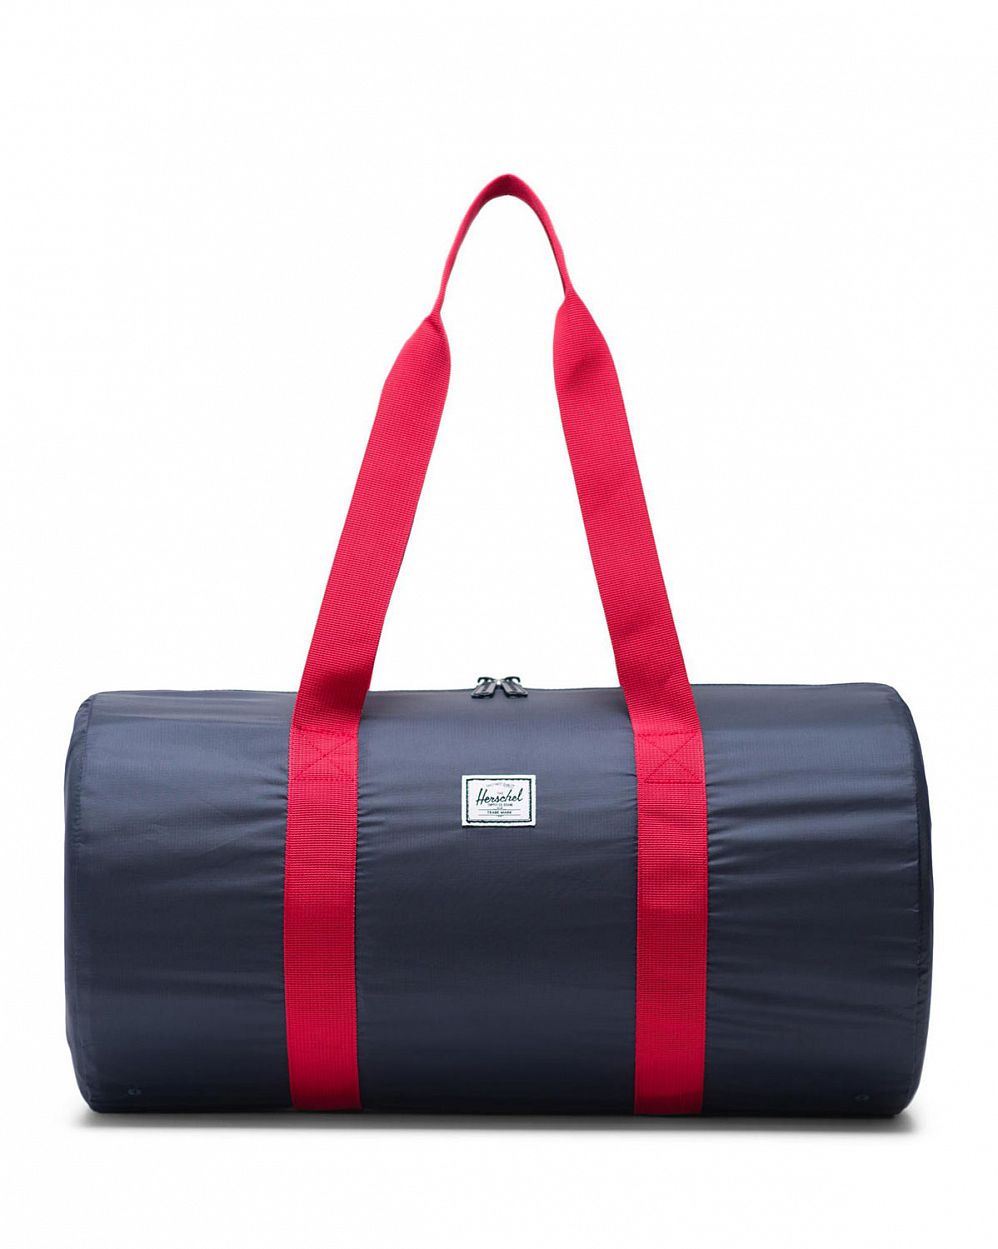 Сумка складная Herschel Packable Duffle Bag Navy Red отзывы